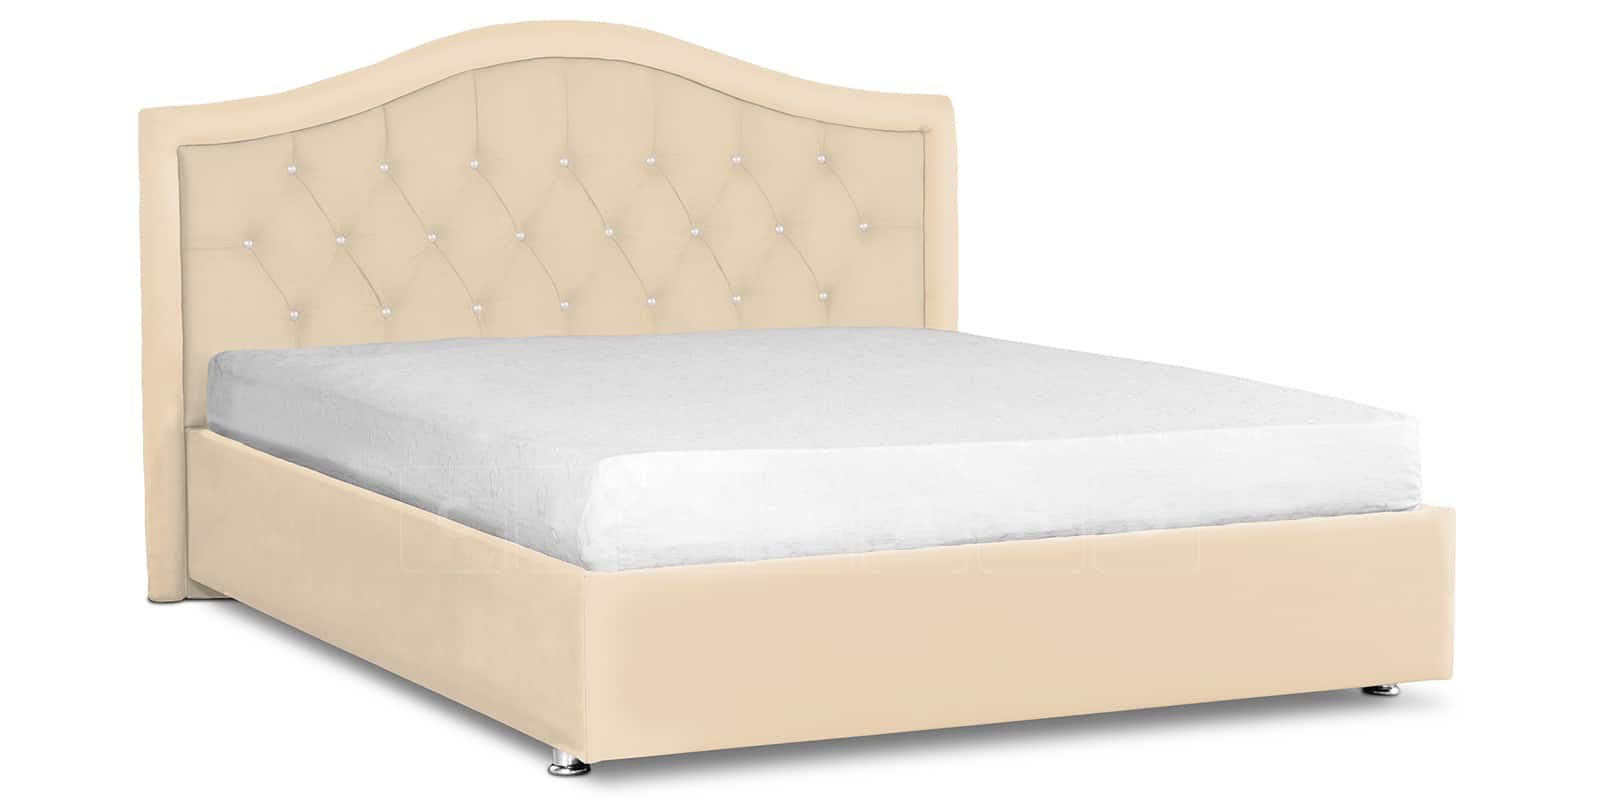 Мягкая кровать Малибу 160см экокожа бежевый вариант 9 фото 1 | интернет-магазин Складно